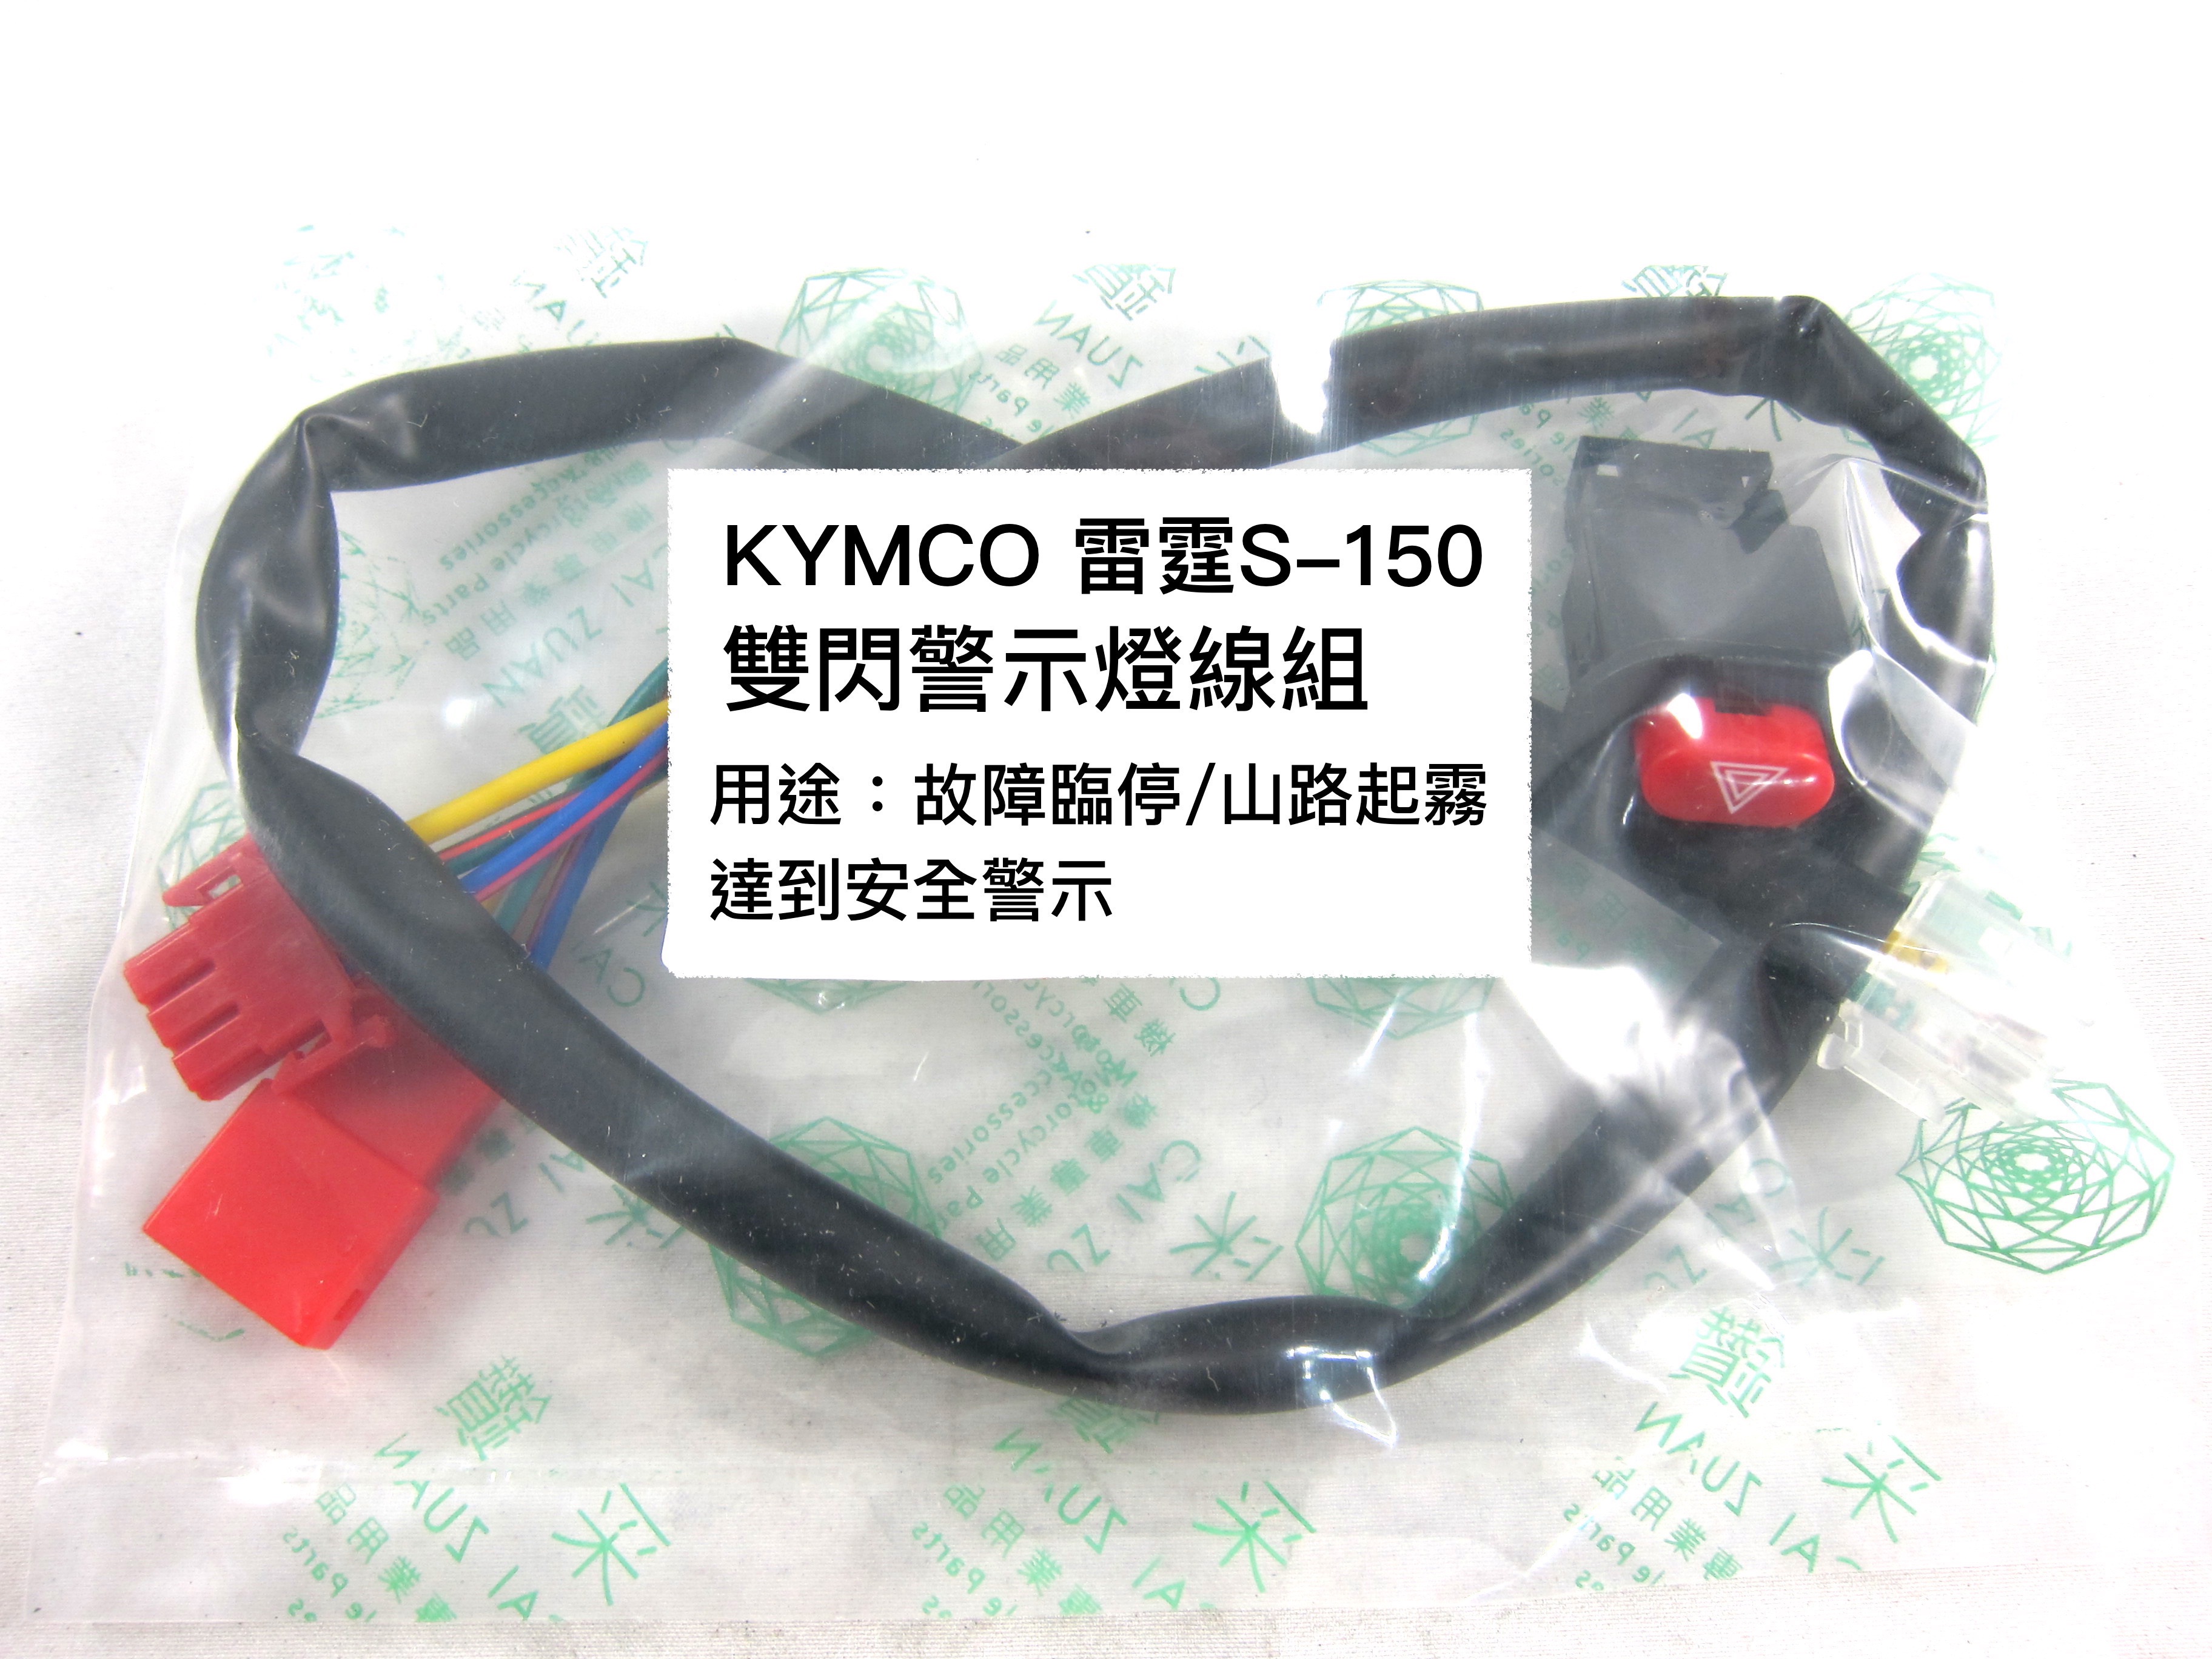 KYMCO 雷霆S150 機車警示燈功能線組+開關 按雙閃提醒後方來車 警示功能 與汽車相同概念 采鑽公司貨